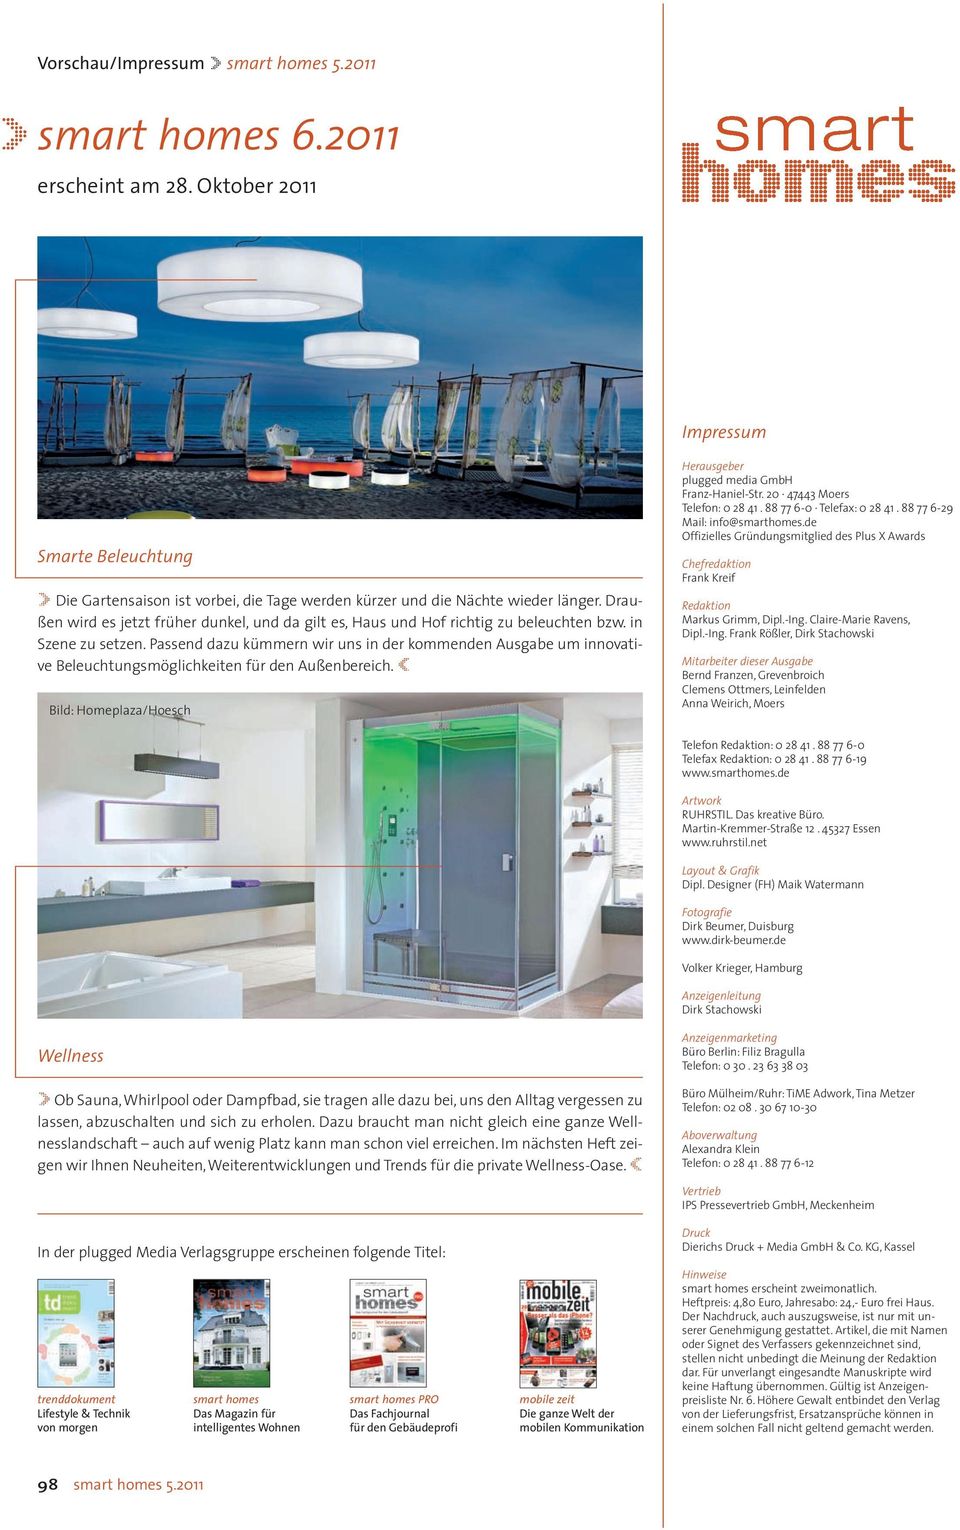 Passend dazu kümmern wir uns in der kommenden Ausgabe um innovative Beleuchtungsmöglichkeiten für den Außenbereich. Bild: Homeplaza/Hoesch Herausgeber plugged media GmbH Franz-Haniel-Str.